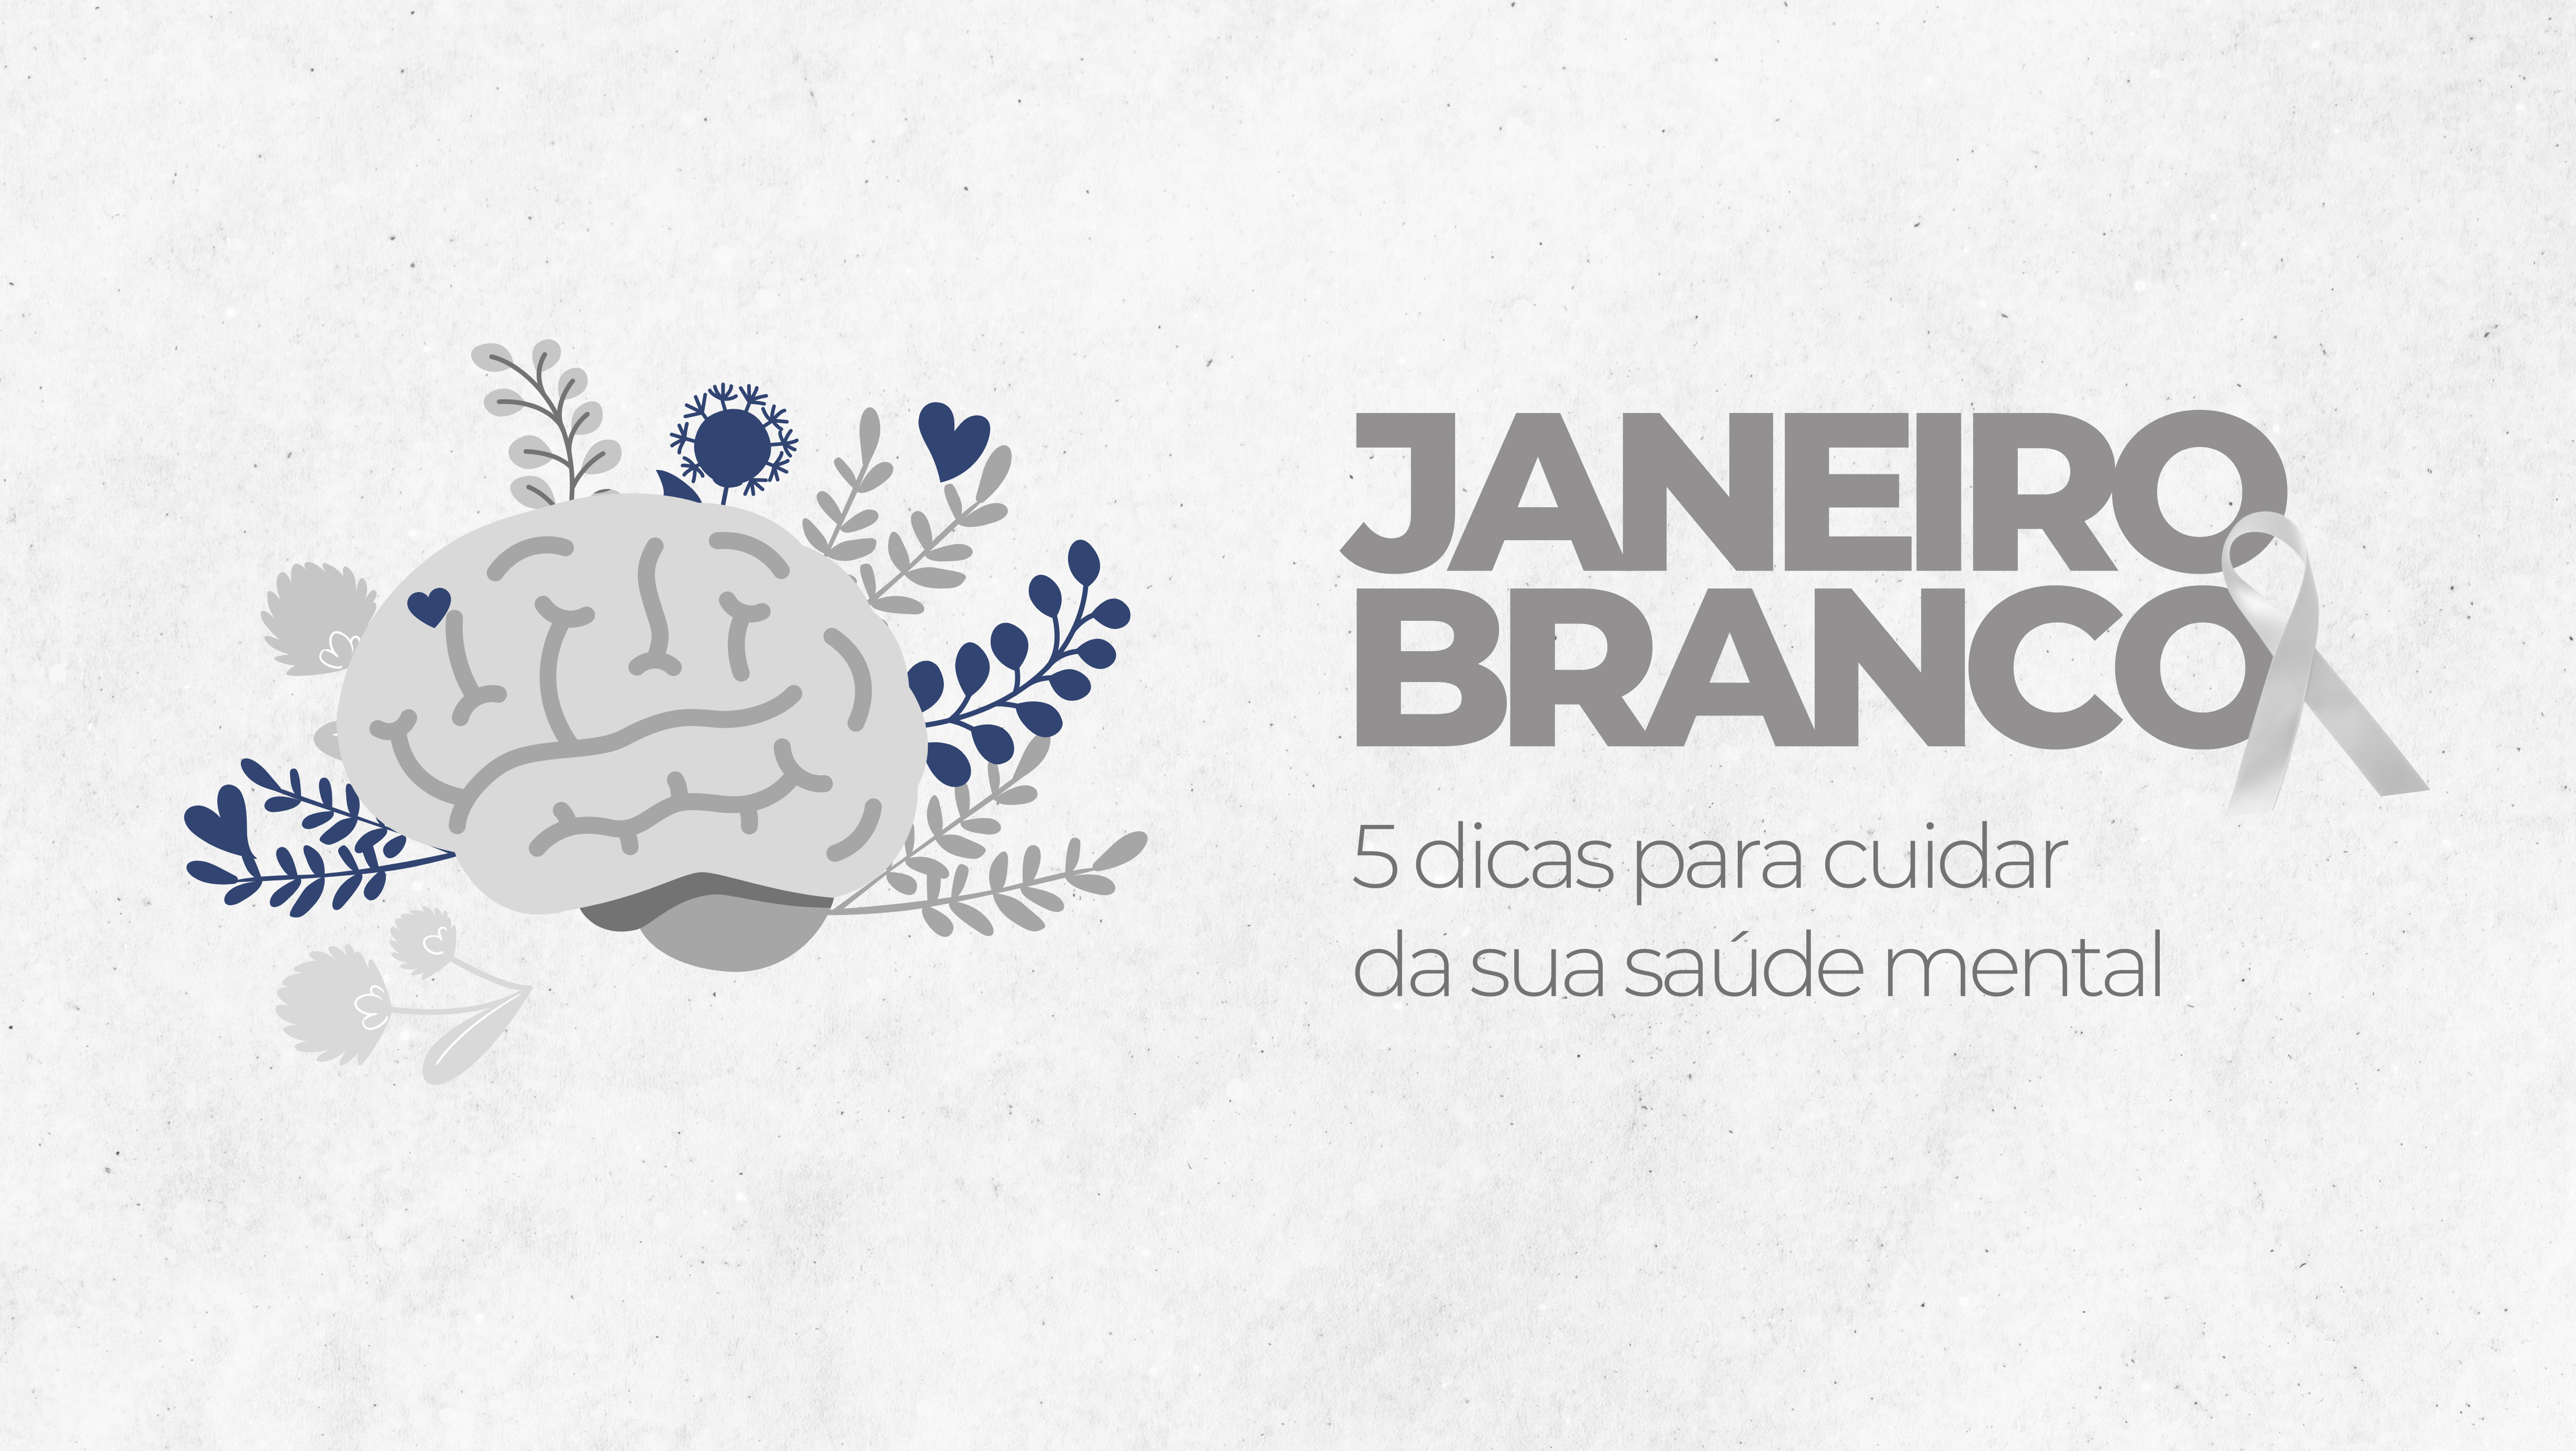 Janeiro Branco: Campanha “A Vida Pede Equilíbrio”